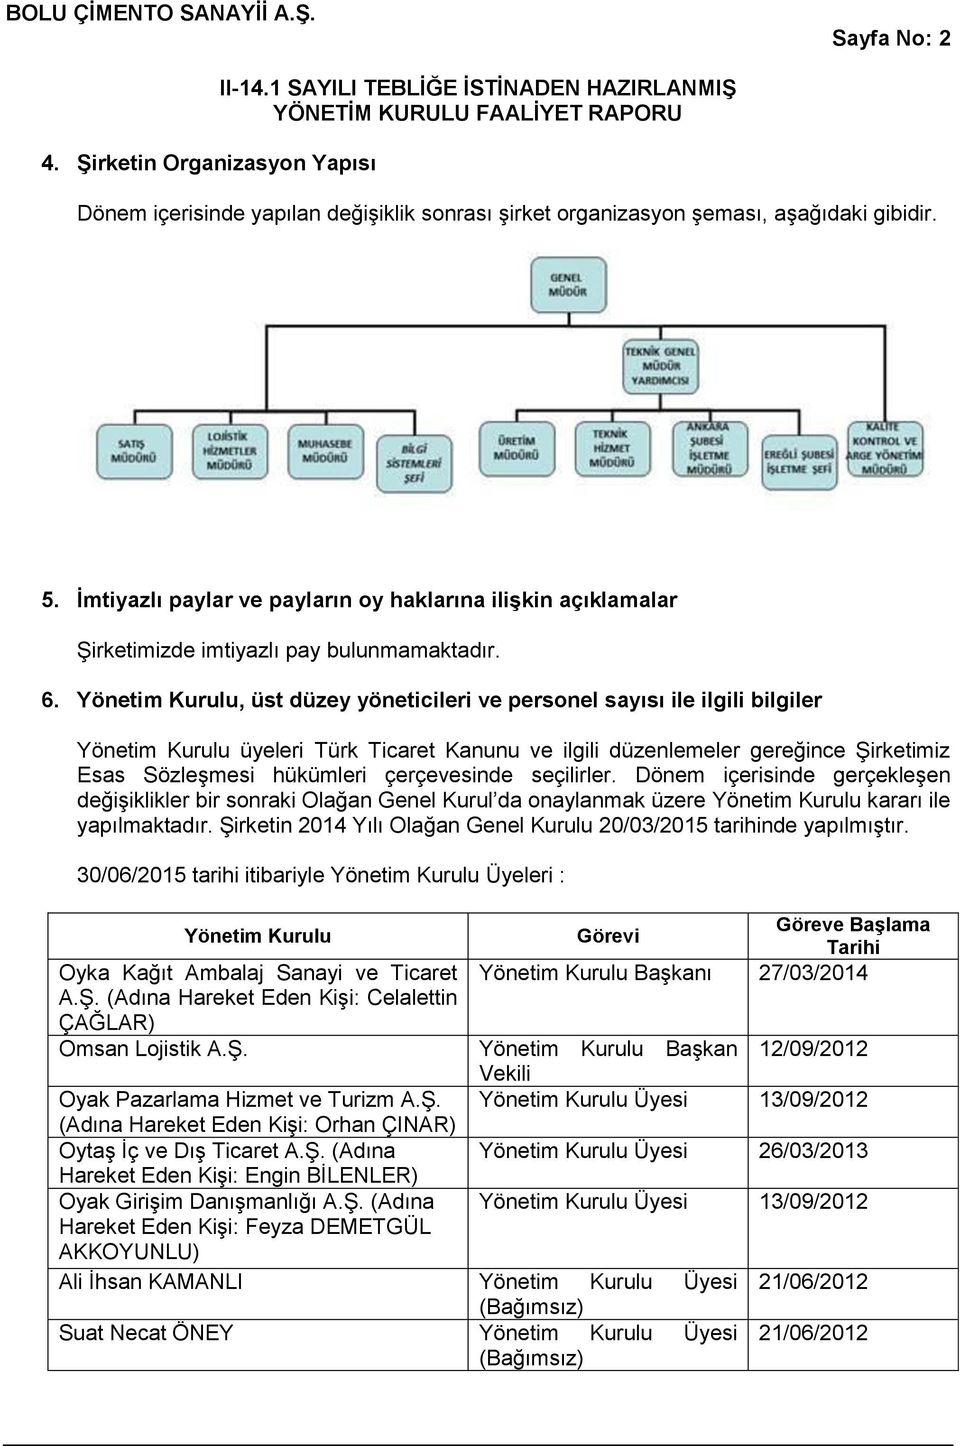 Yönetim Kurulu, üst düzey yöneticileri ve personel sayısı ile ilgili bilgiler Yönetim Kurulu üyeleri Türk Ticaret Kanunu ve ilgili düzenlemeler gereğince Şirketimiz Esas Sözleşmesi hükümleri